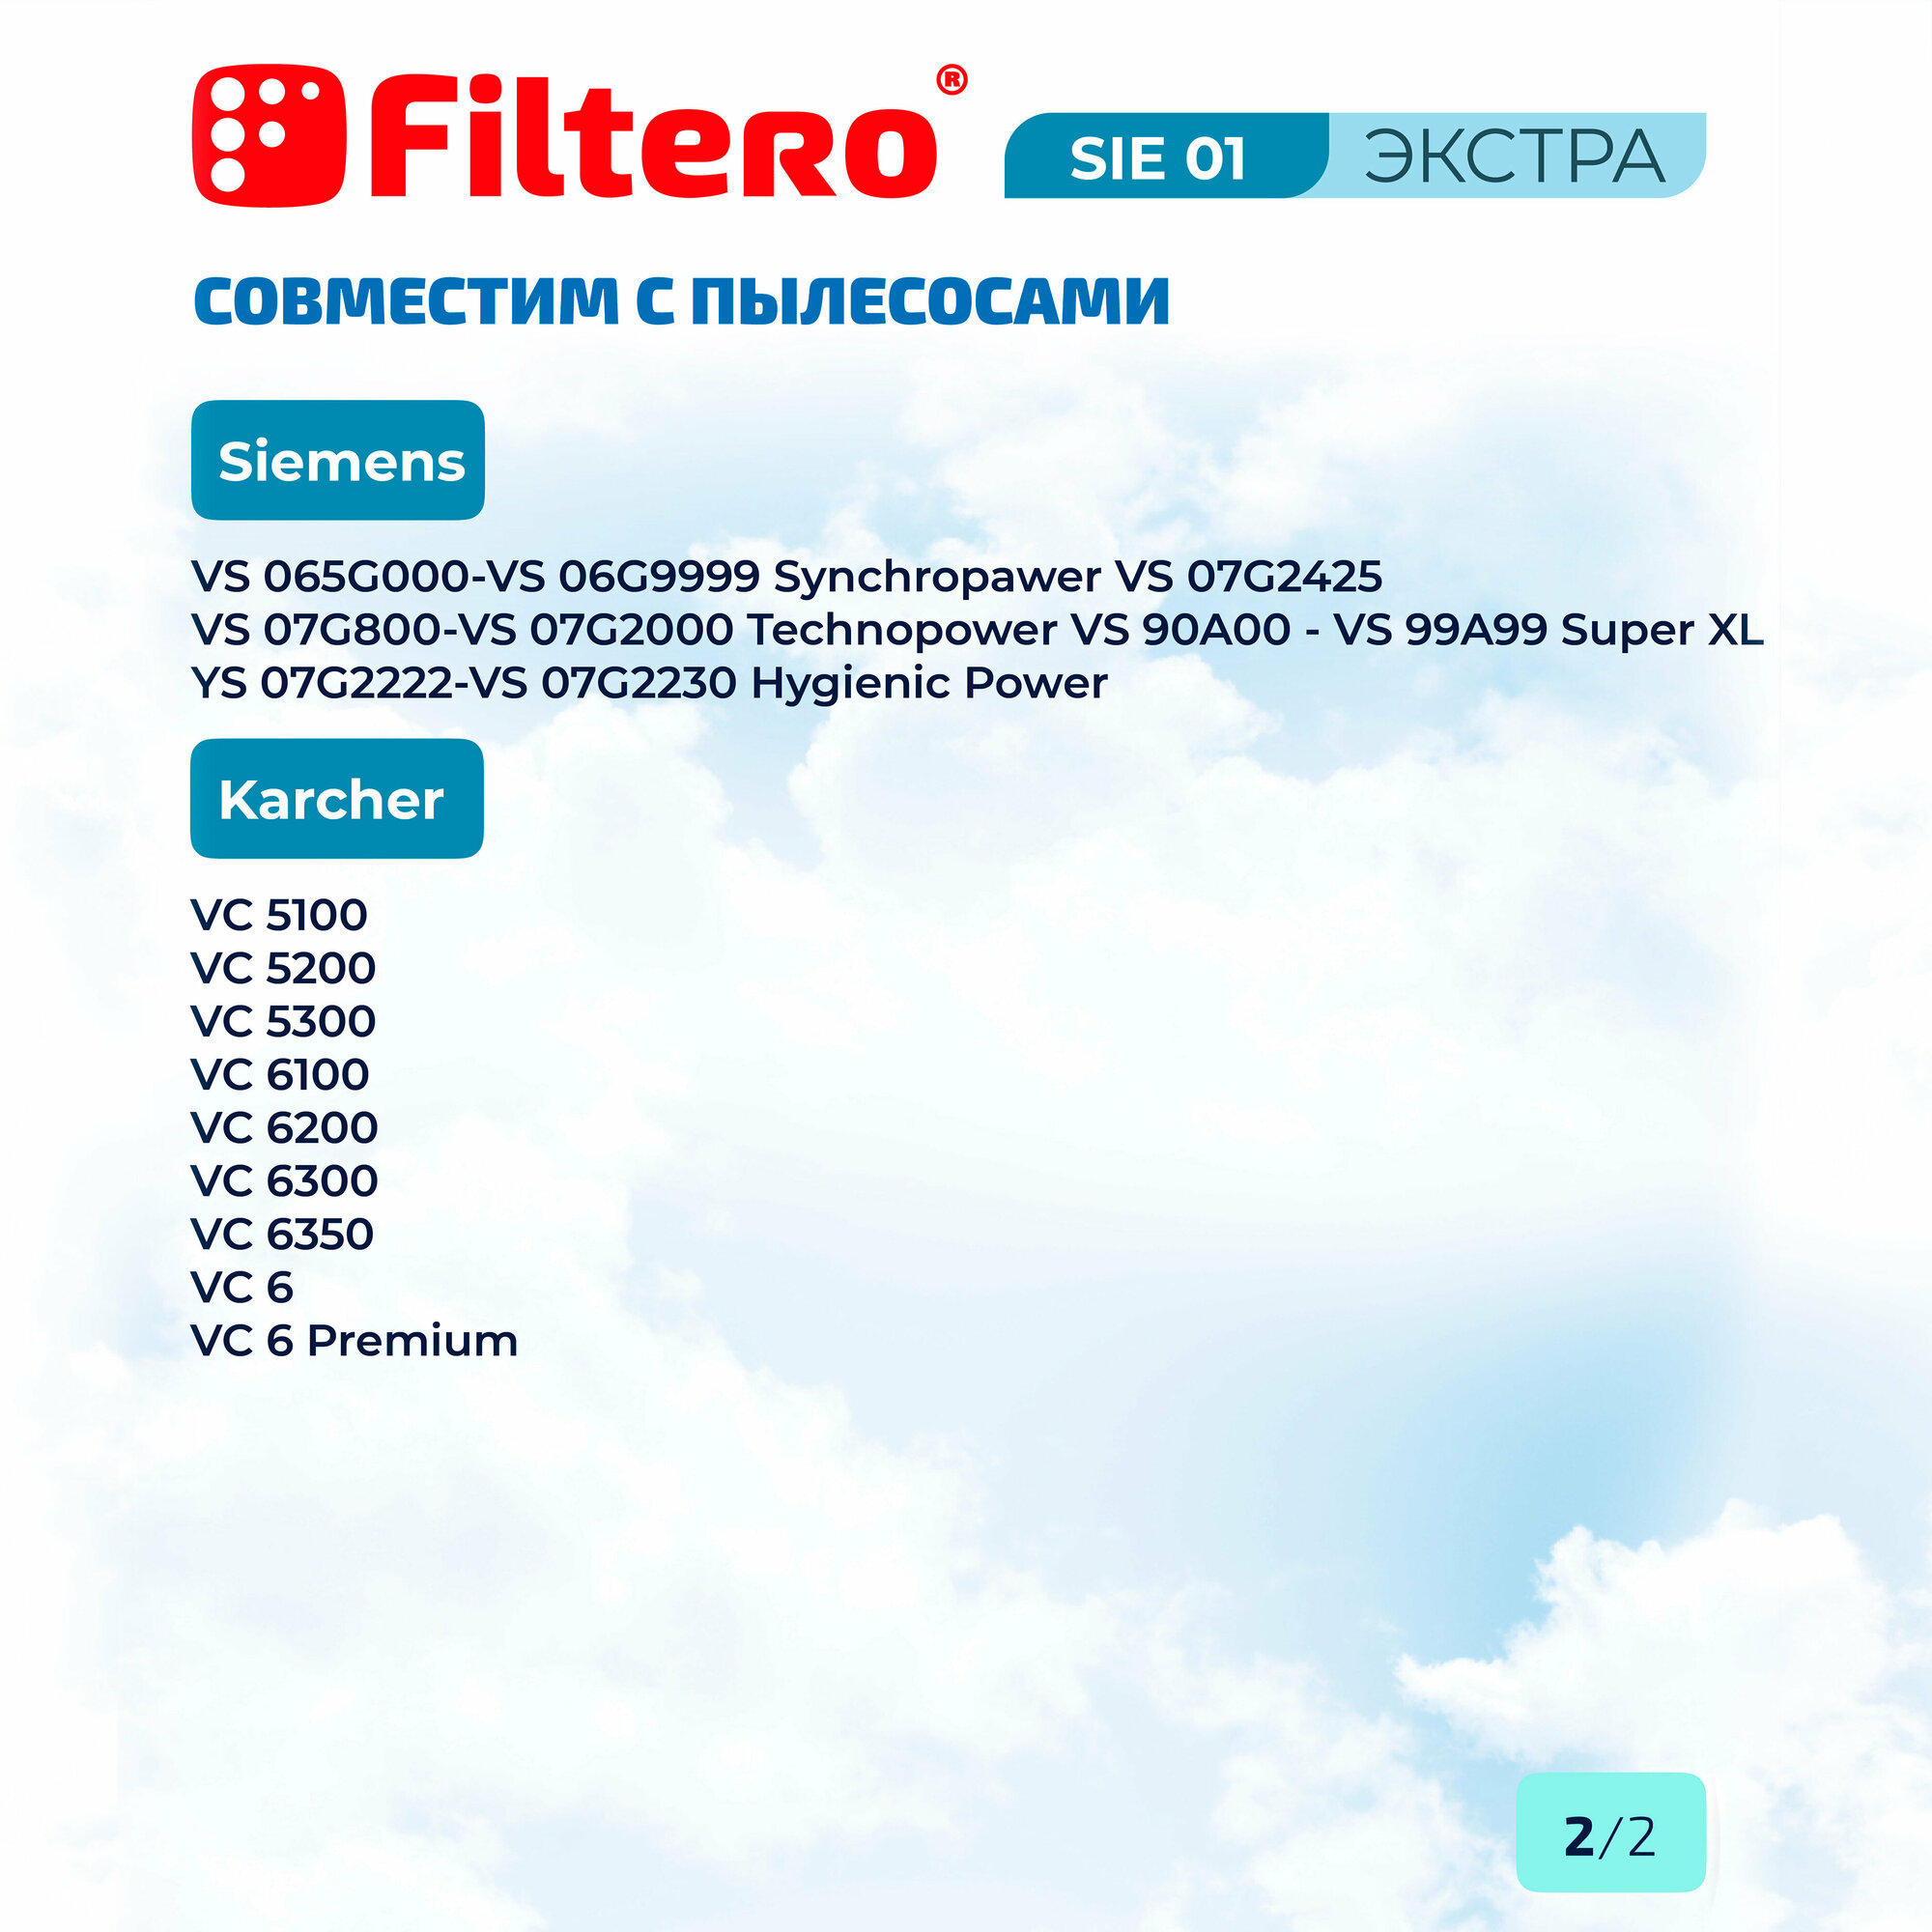 Мешки-пылесборники Filtero SIE 01 Экстра, для пылесосов Bosch, Siemens, синтетические, 4 штуки